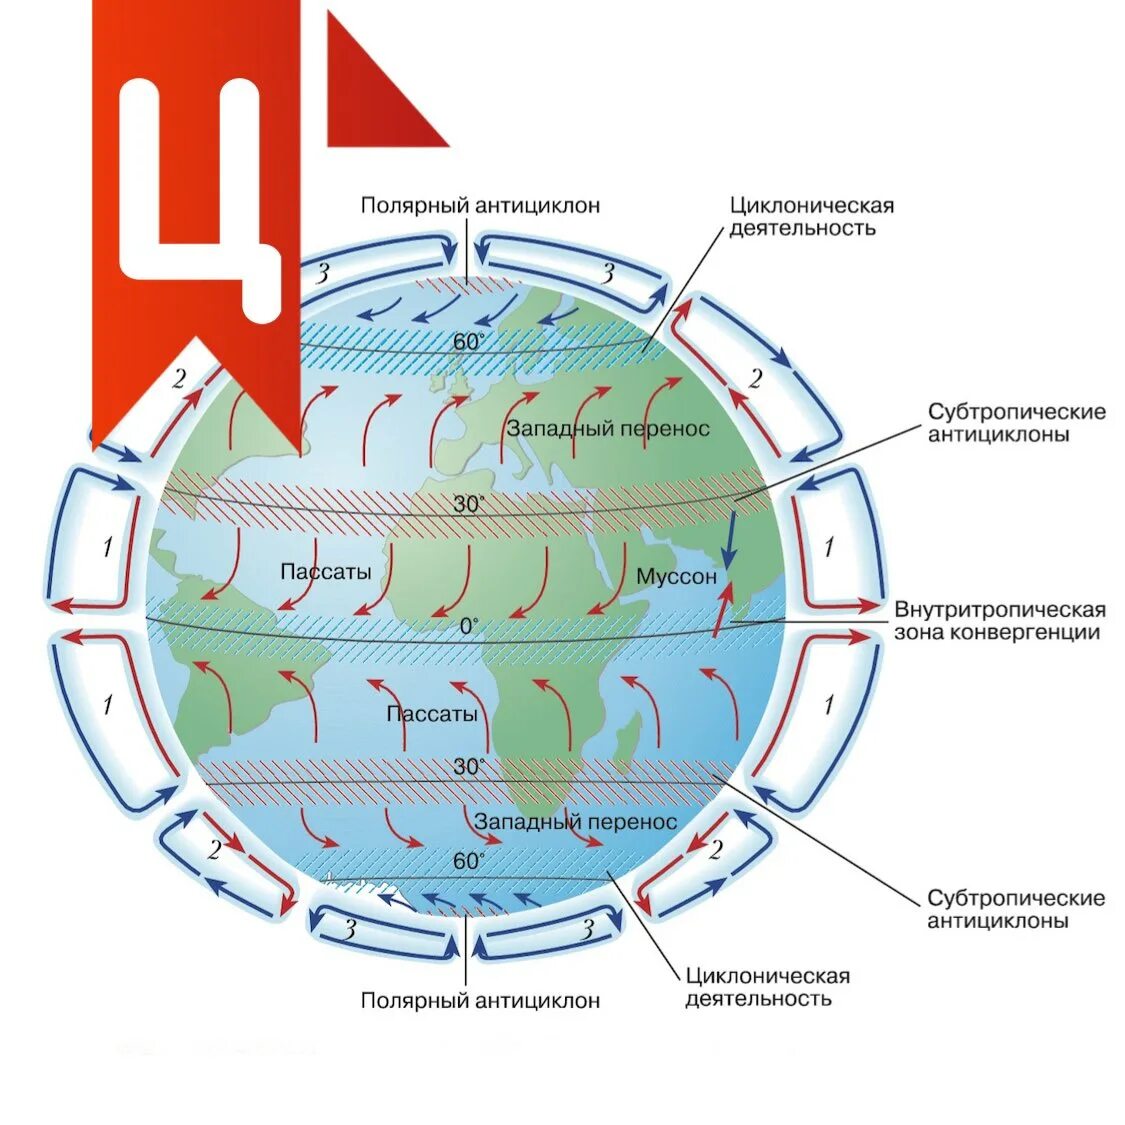 Схема общей циркуляции атмосферы на земле. Схема глобальной циркуляции атмосферы. Схема глабальноц церкульяции отмосыеов. Основные типы циркуляции атмосферы.